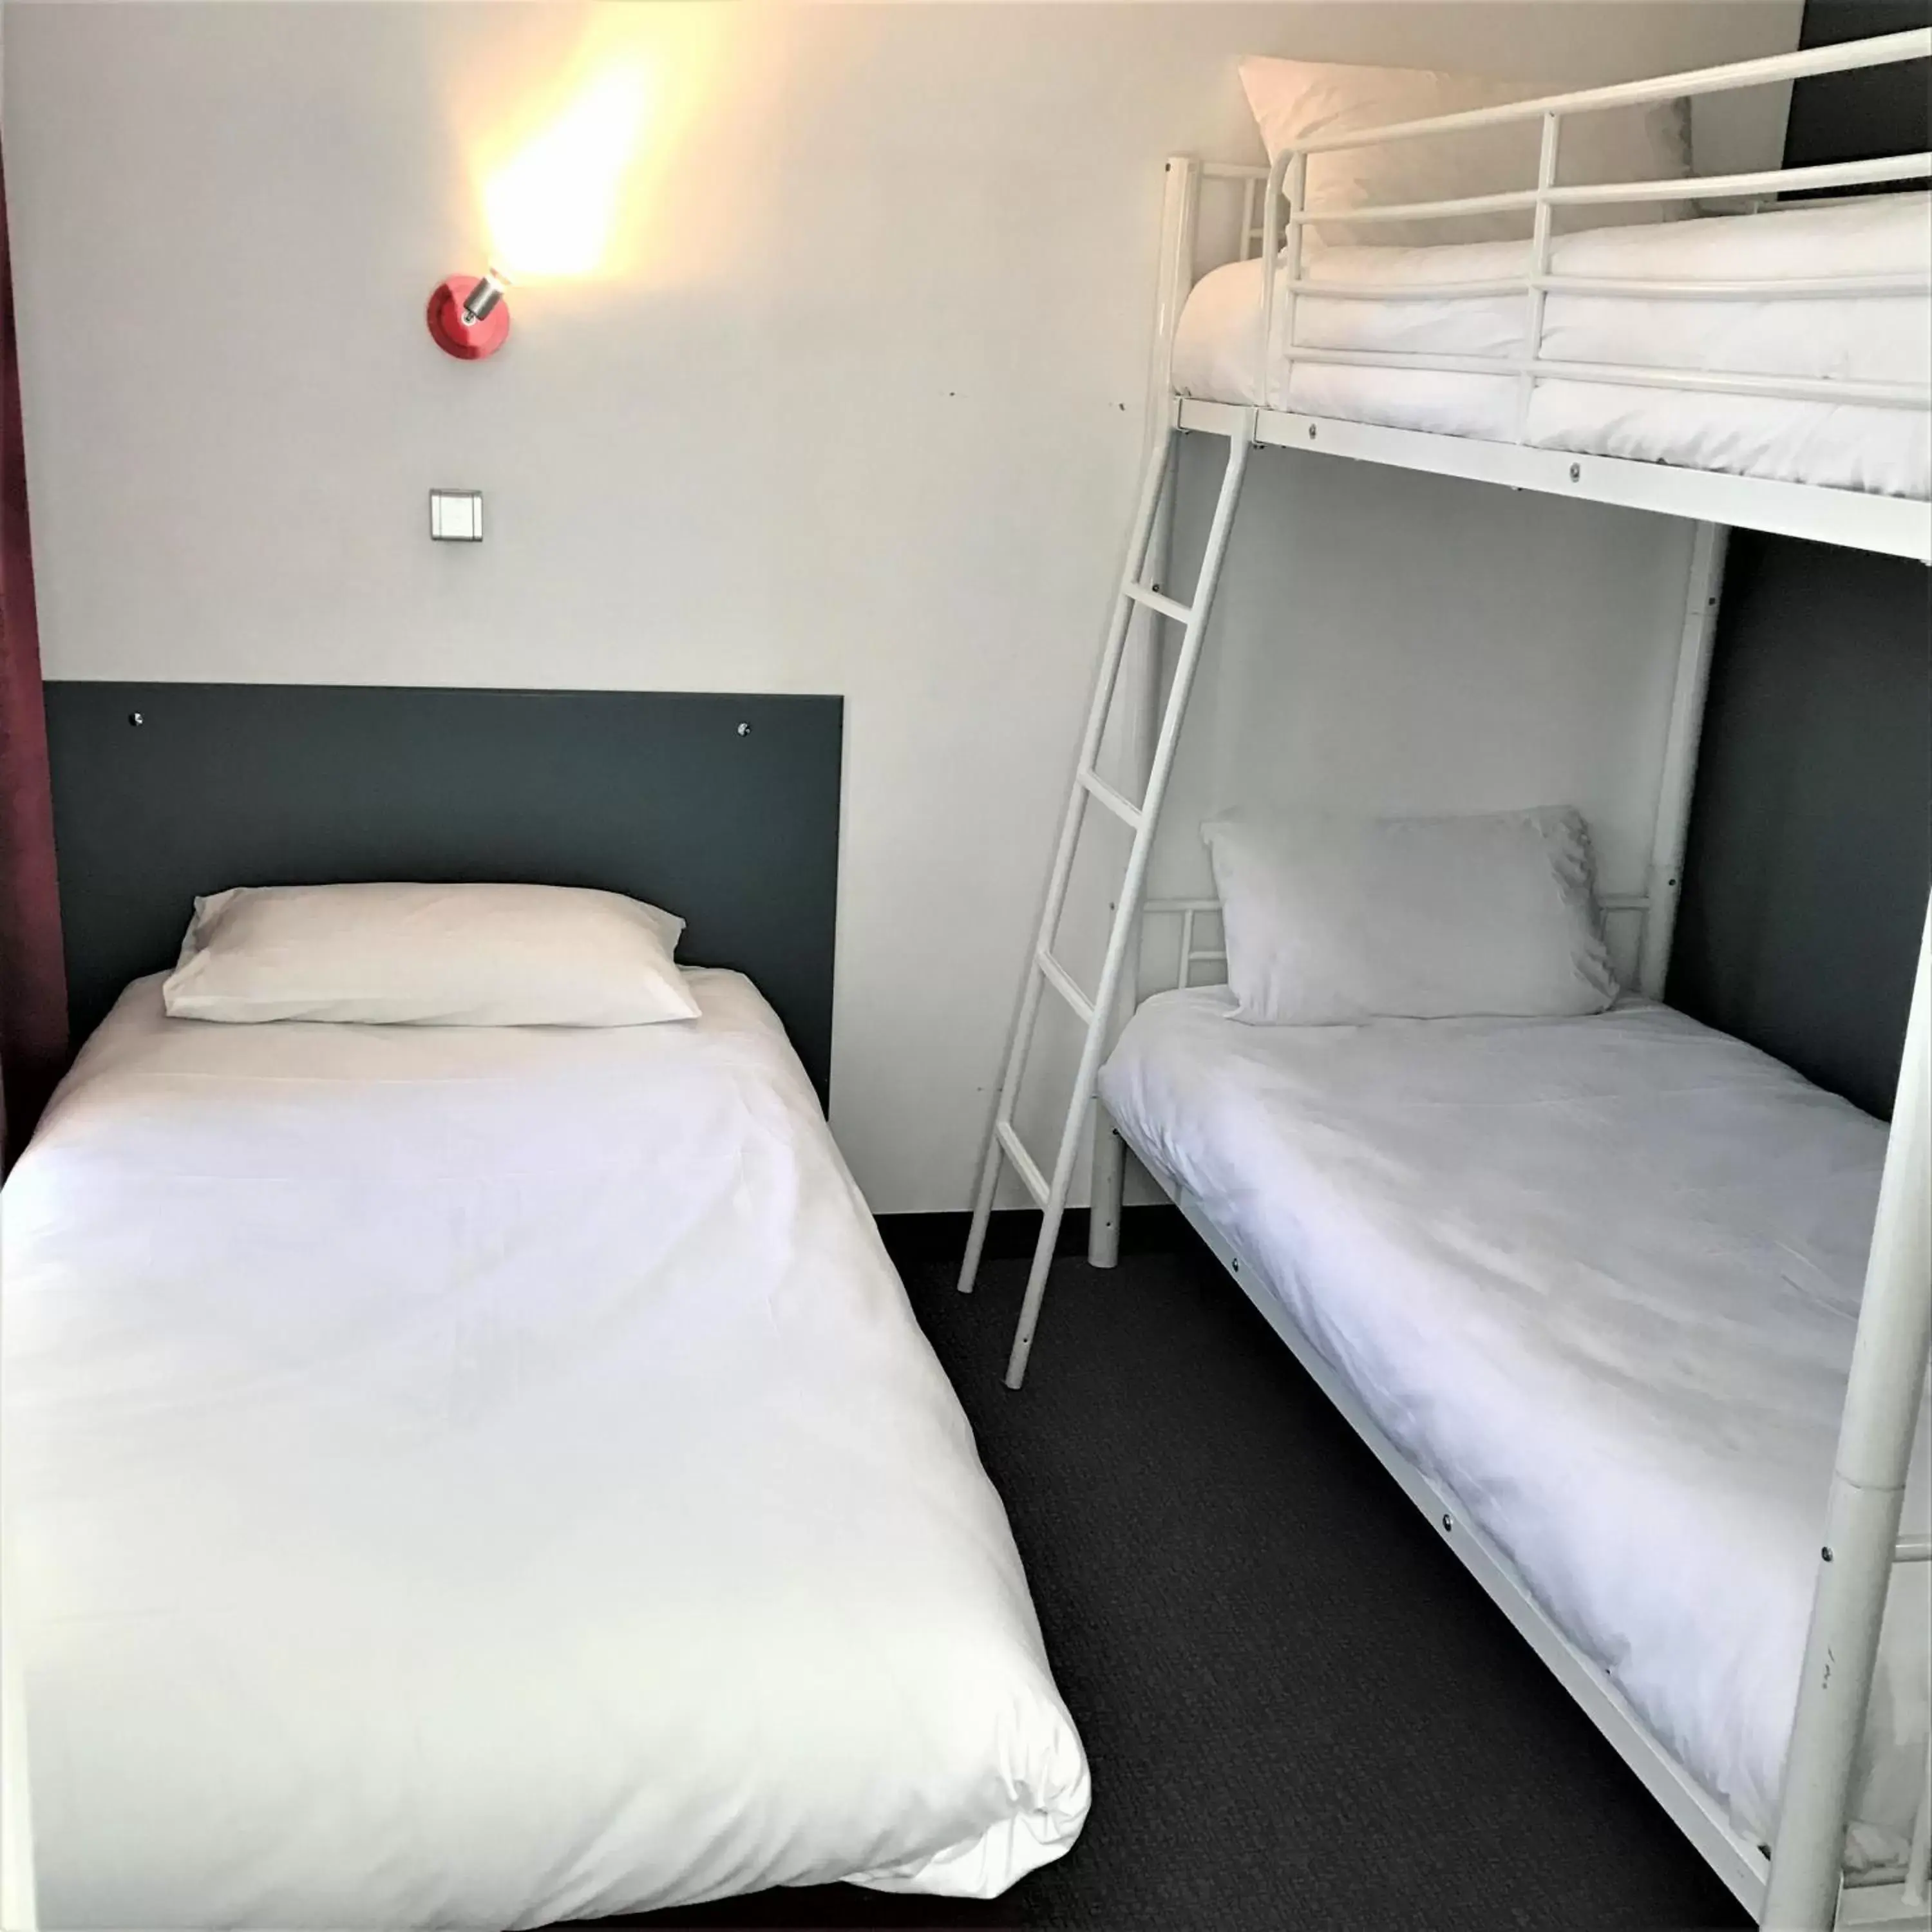 Bed, Bunk Bed in HALT HOTEL - Choisissez l'Hôtellerie Indépendante